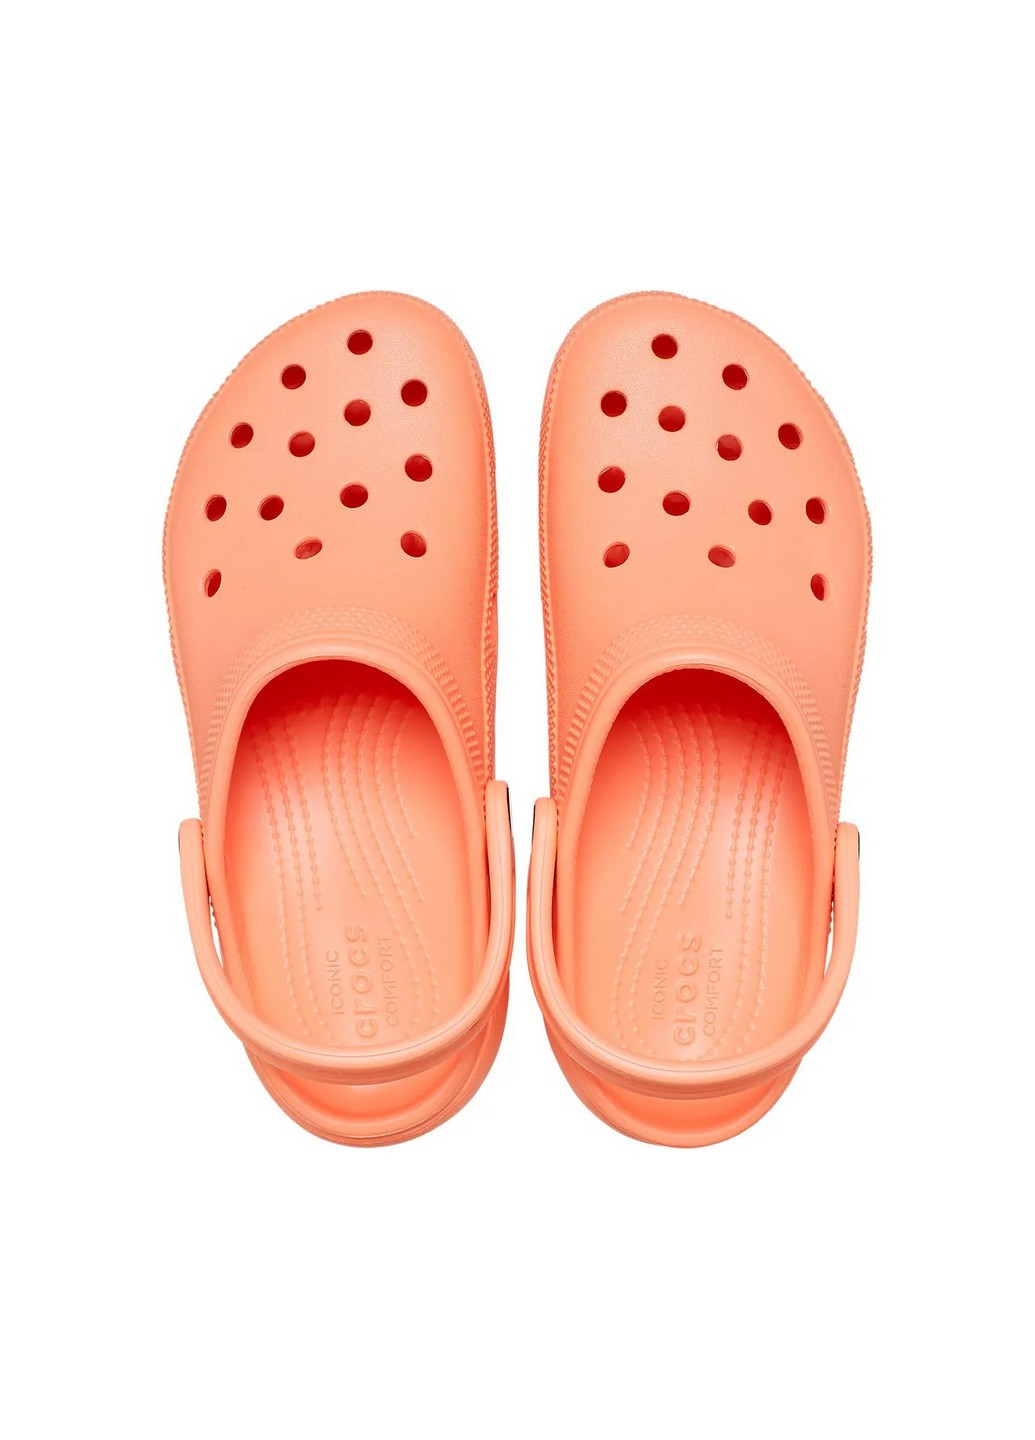 Персиковые сабо кроксы на платформе Crocs